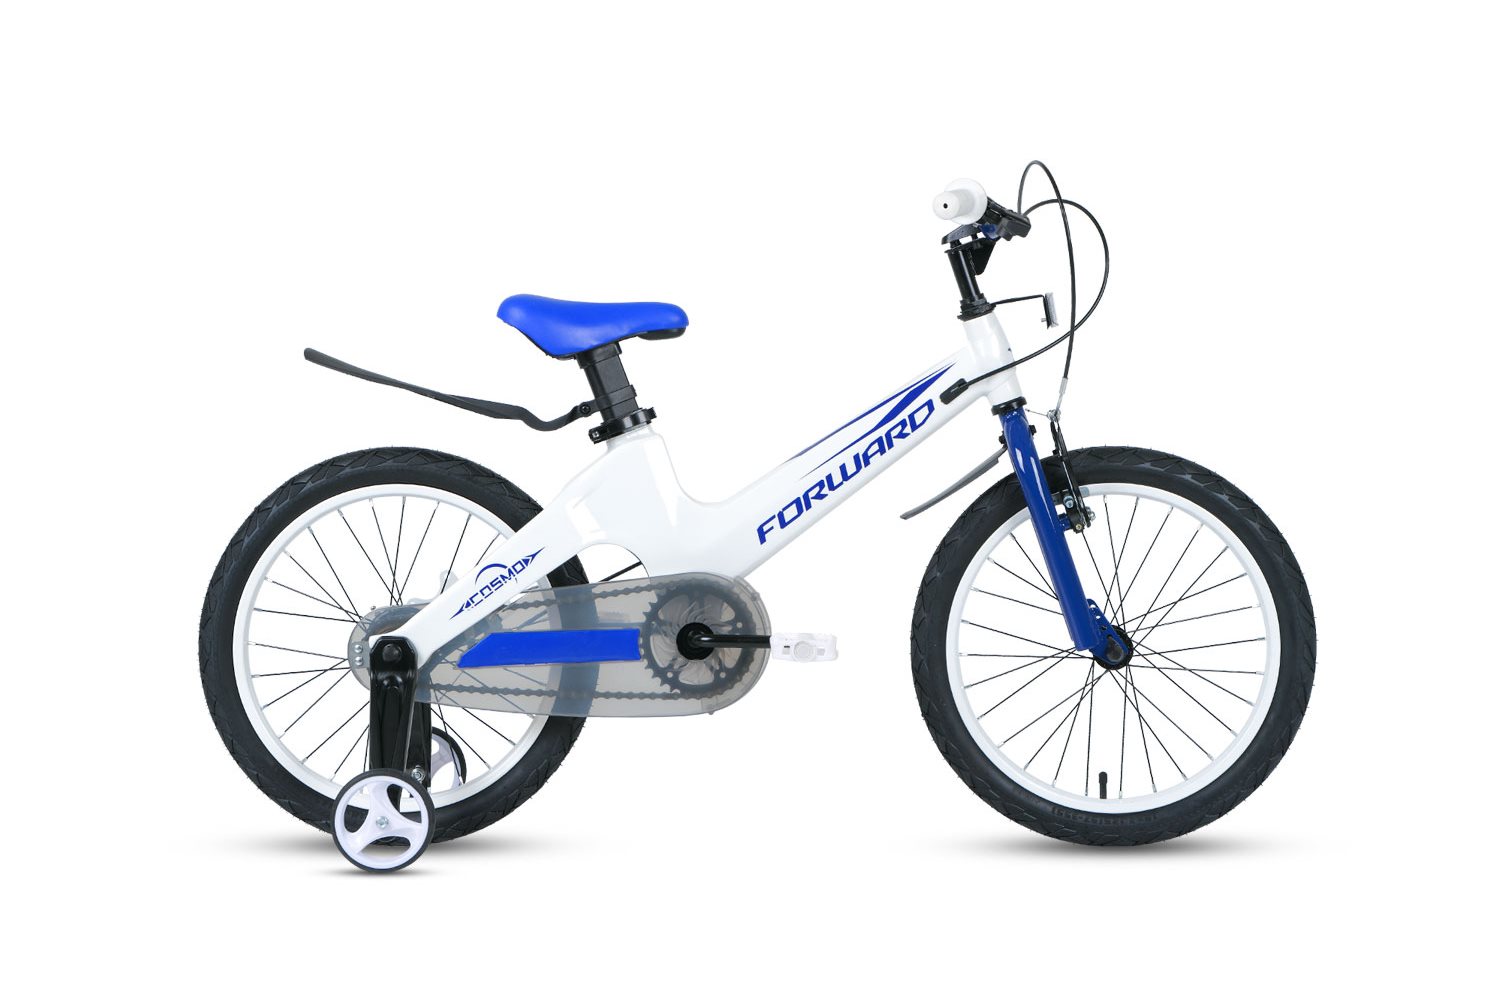  Отзывы о Детском велосипеде Forward Cosmo 16 2.0 (2021) 2021